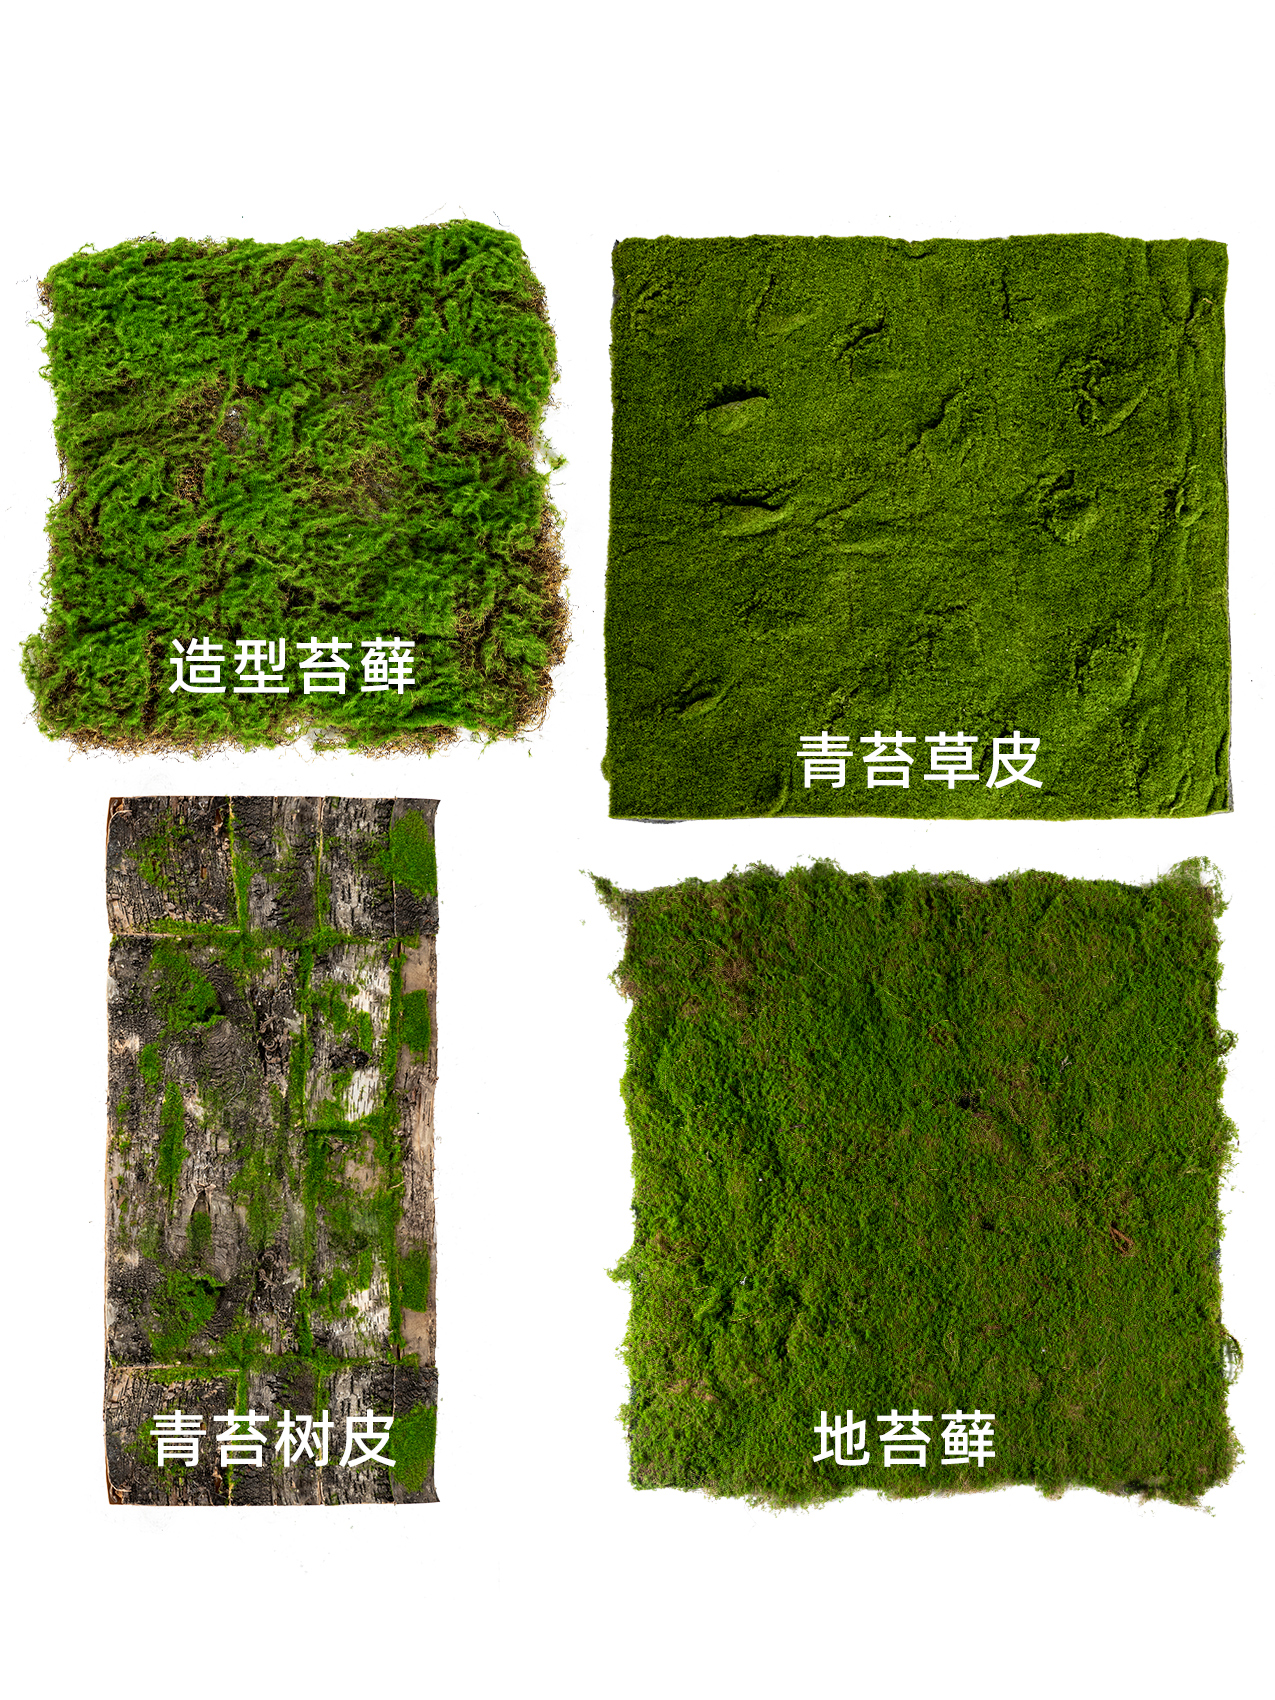 栩栩如生綠植仿真植絨假青苔苔蘚皮塊人工人造草皮草坪室內造景裝飾 (7.4折)